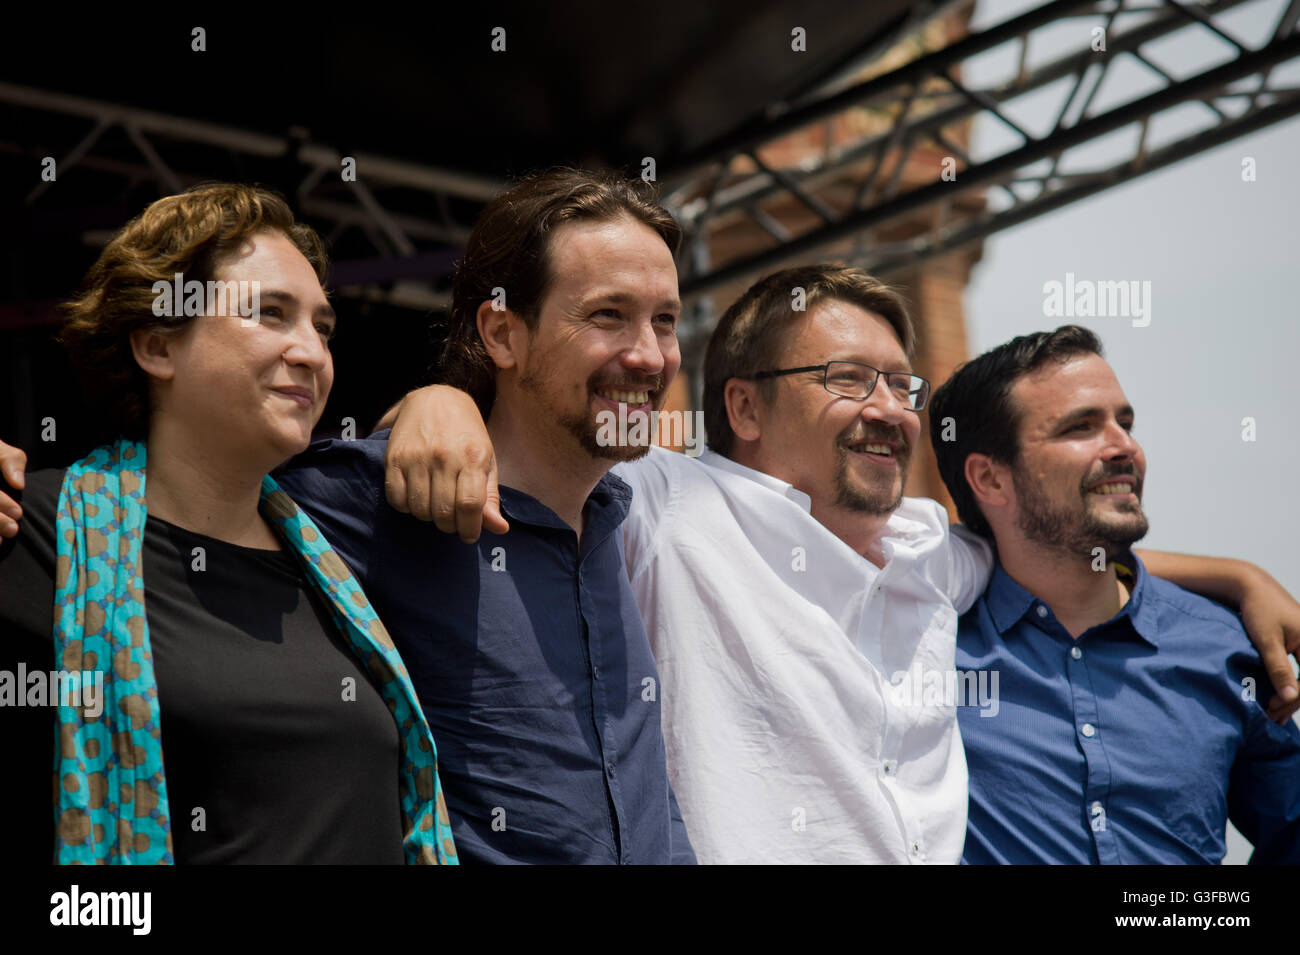 Ada Colau, Pablo Iglesias,  Xavier Domenech and Alberto Garzón during a politcal rally in Barcelona. Stock Photo